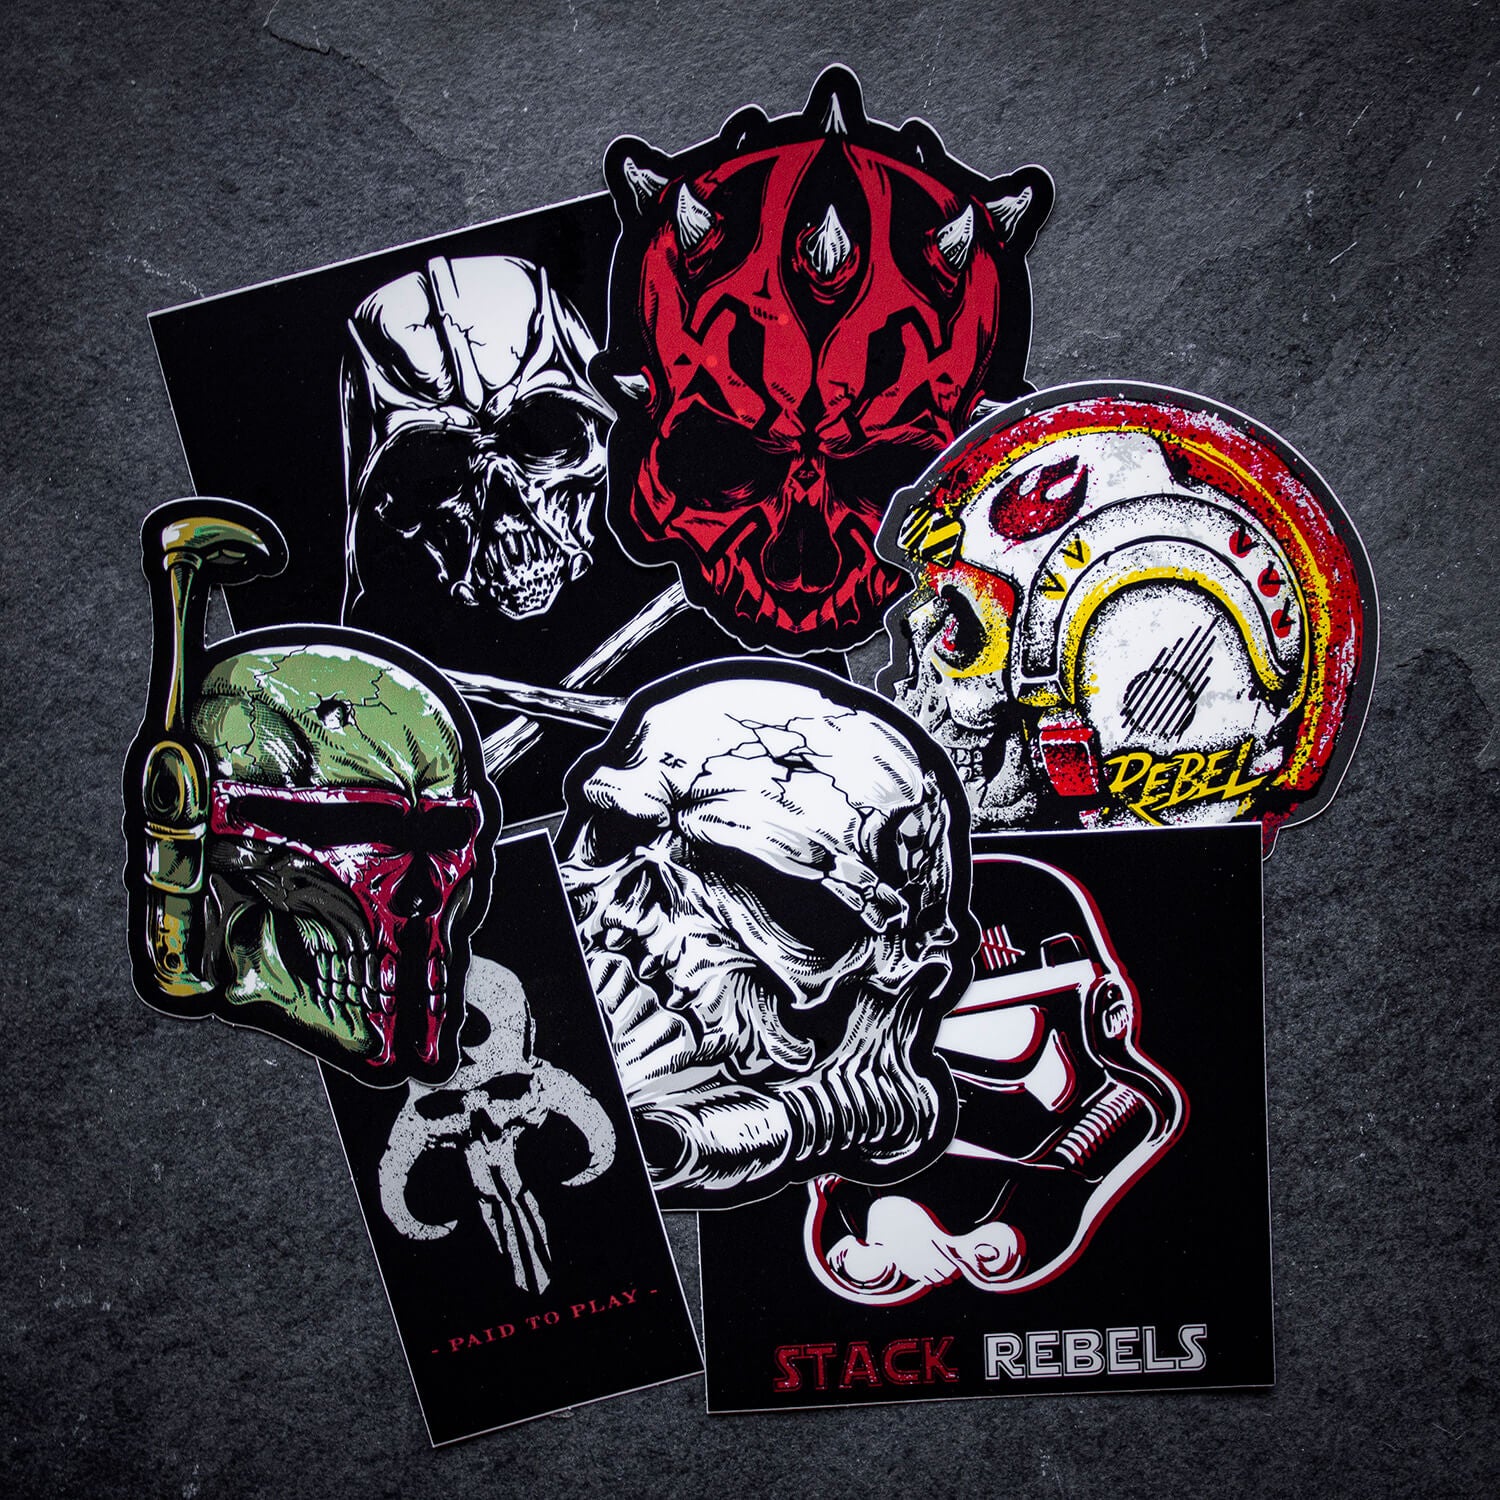 star wars sticker pack